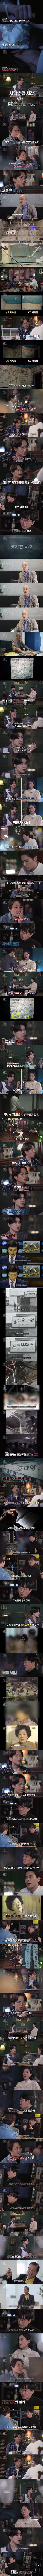 1987년 대전......천장에서 발견 된 32구의 시신..jpg